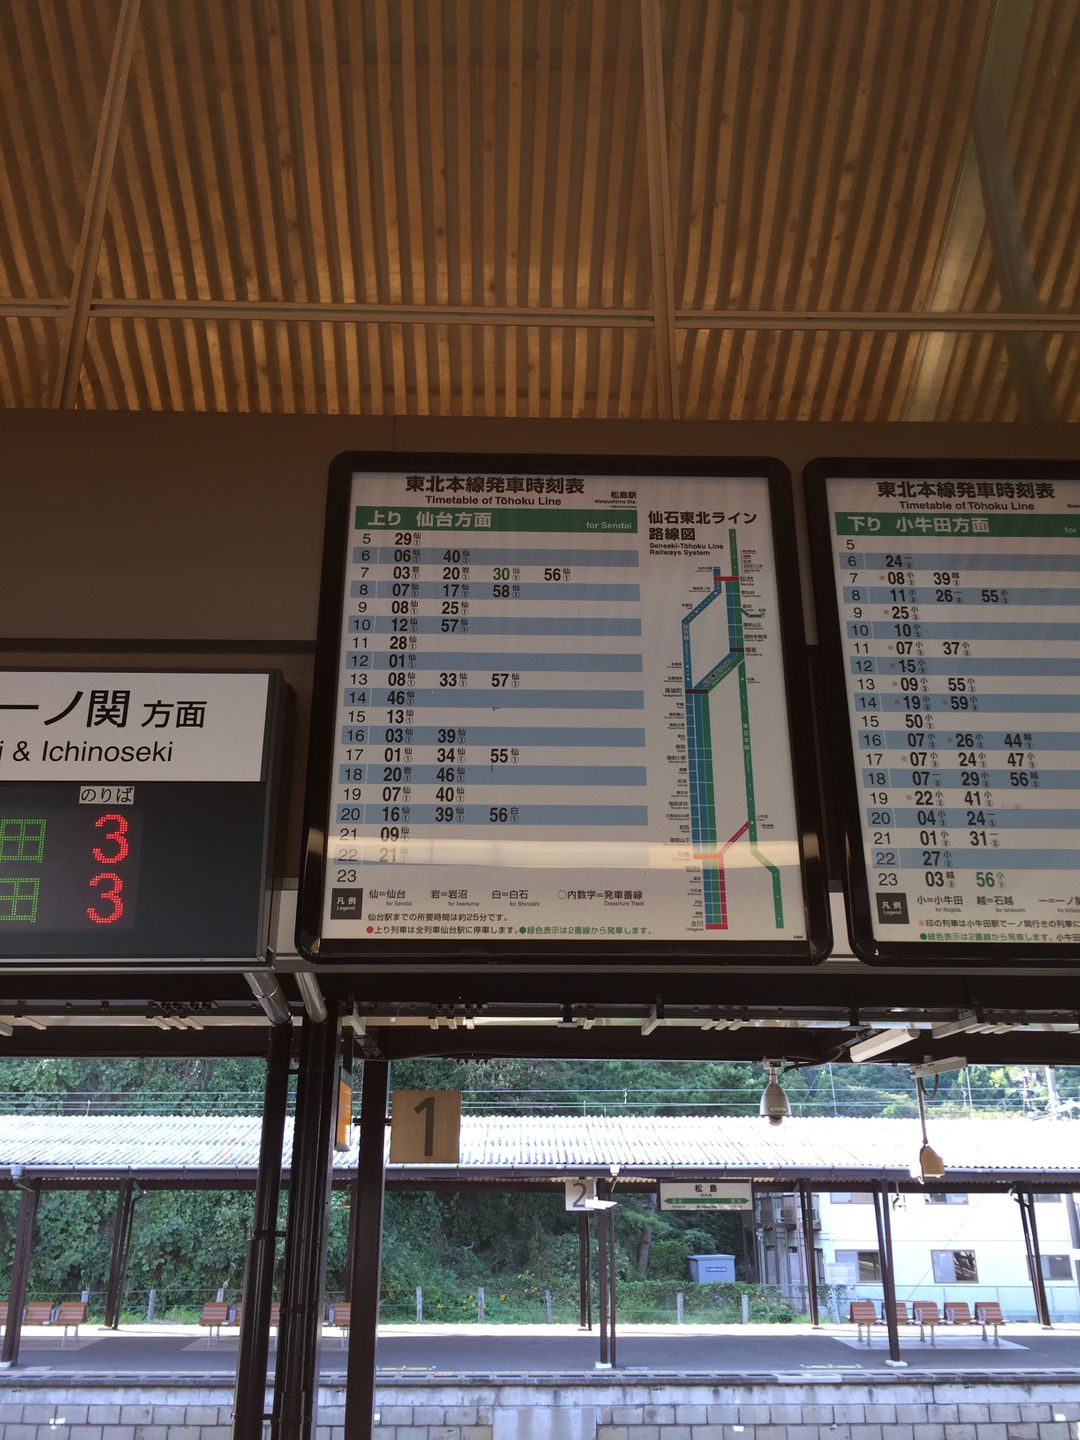 松島站的班次是比松島海岸站略多些